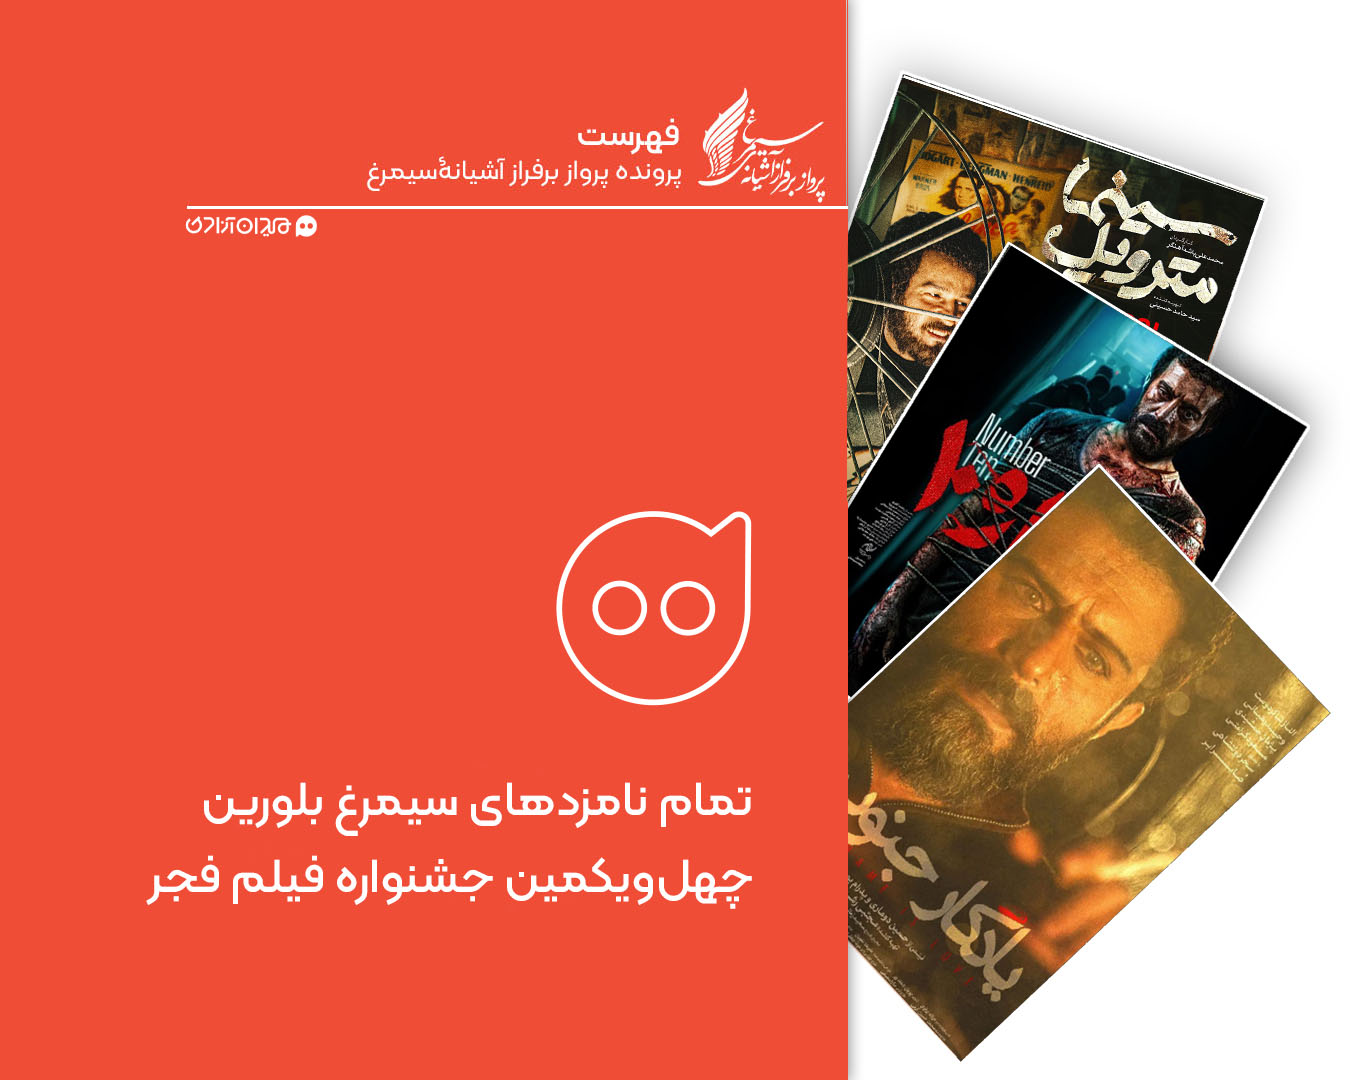 فهرست: تمام نامزدهای سیمرغ بلورین چهل و یکمین جشنواره فیلم فجر در همه بخش ها